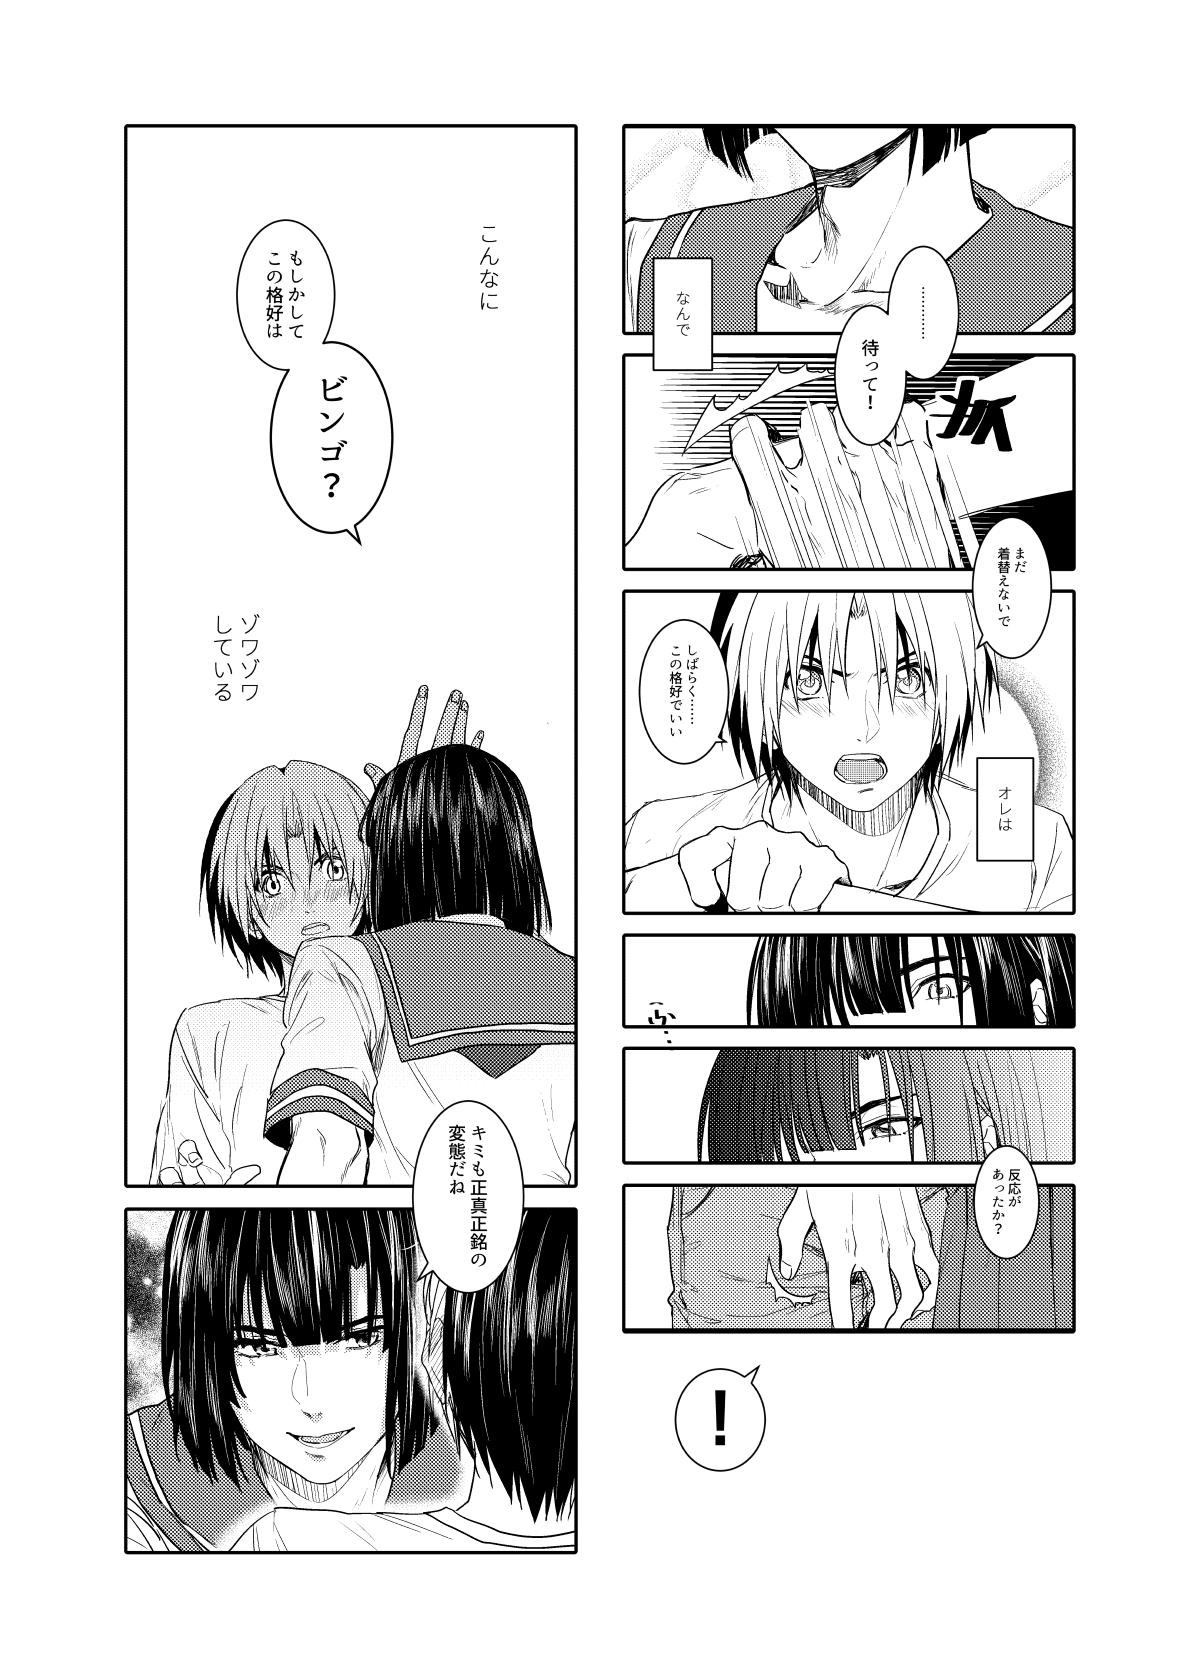 Leaked Saikyou ♂ Kanojo - Hikaru no go Chunky - Page 5